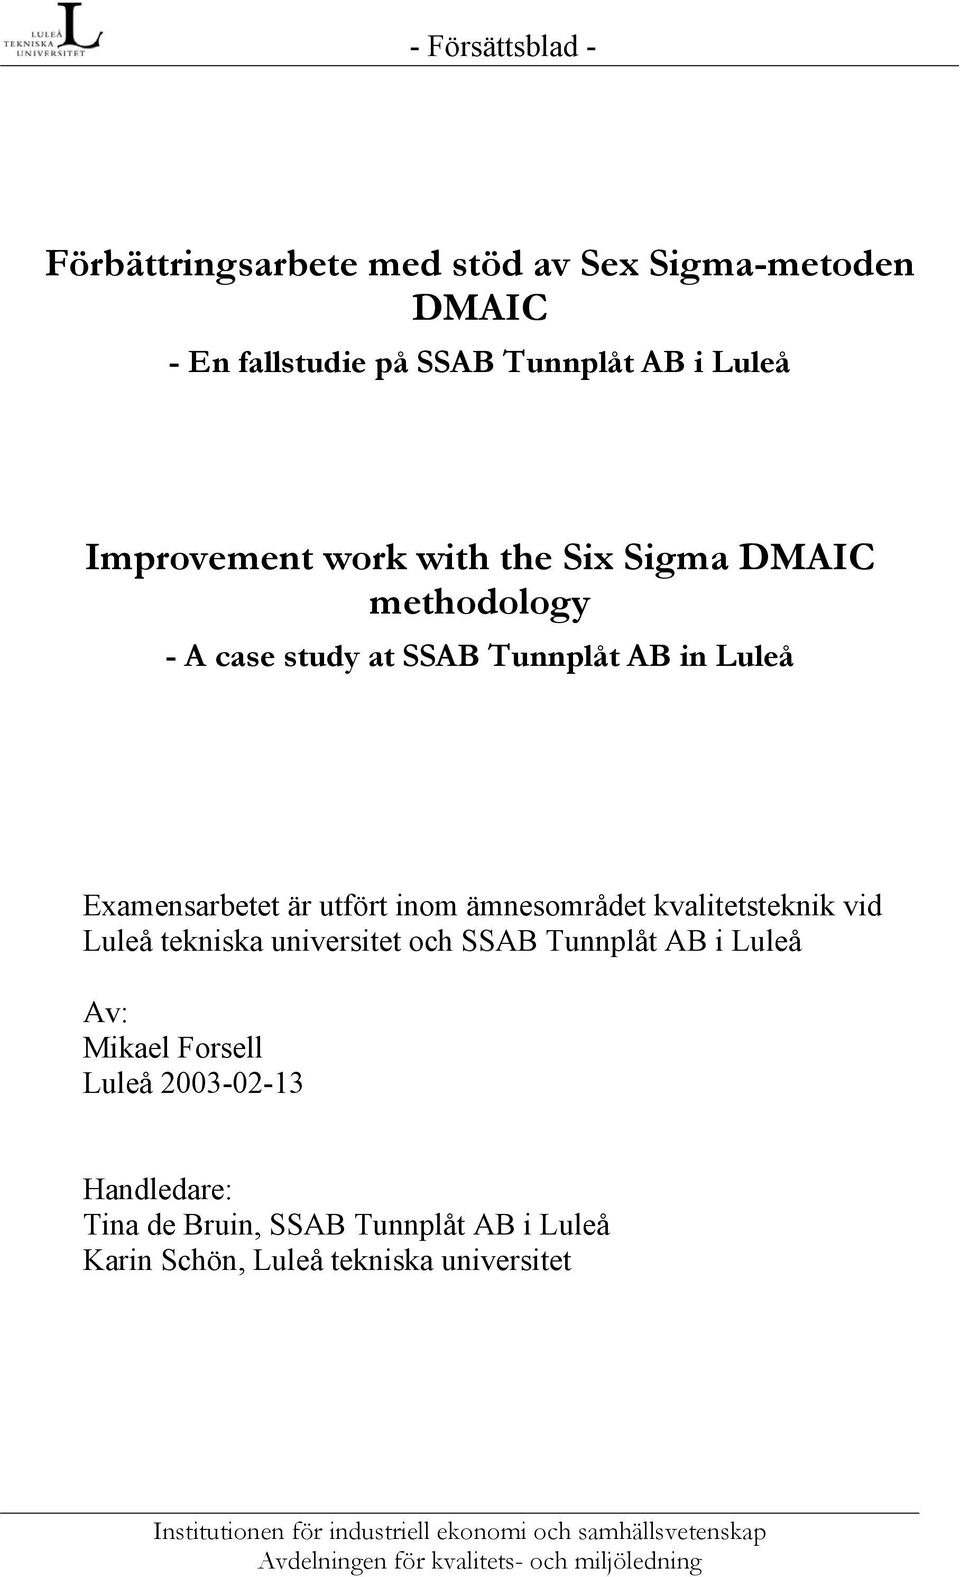 Examensarbetet är utfört inom ämnesområdet kvalitetsteknik vid Luleå tekniska universitet och SSAB Tunnplåt AB i